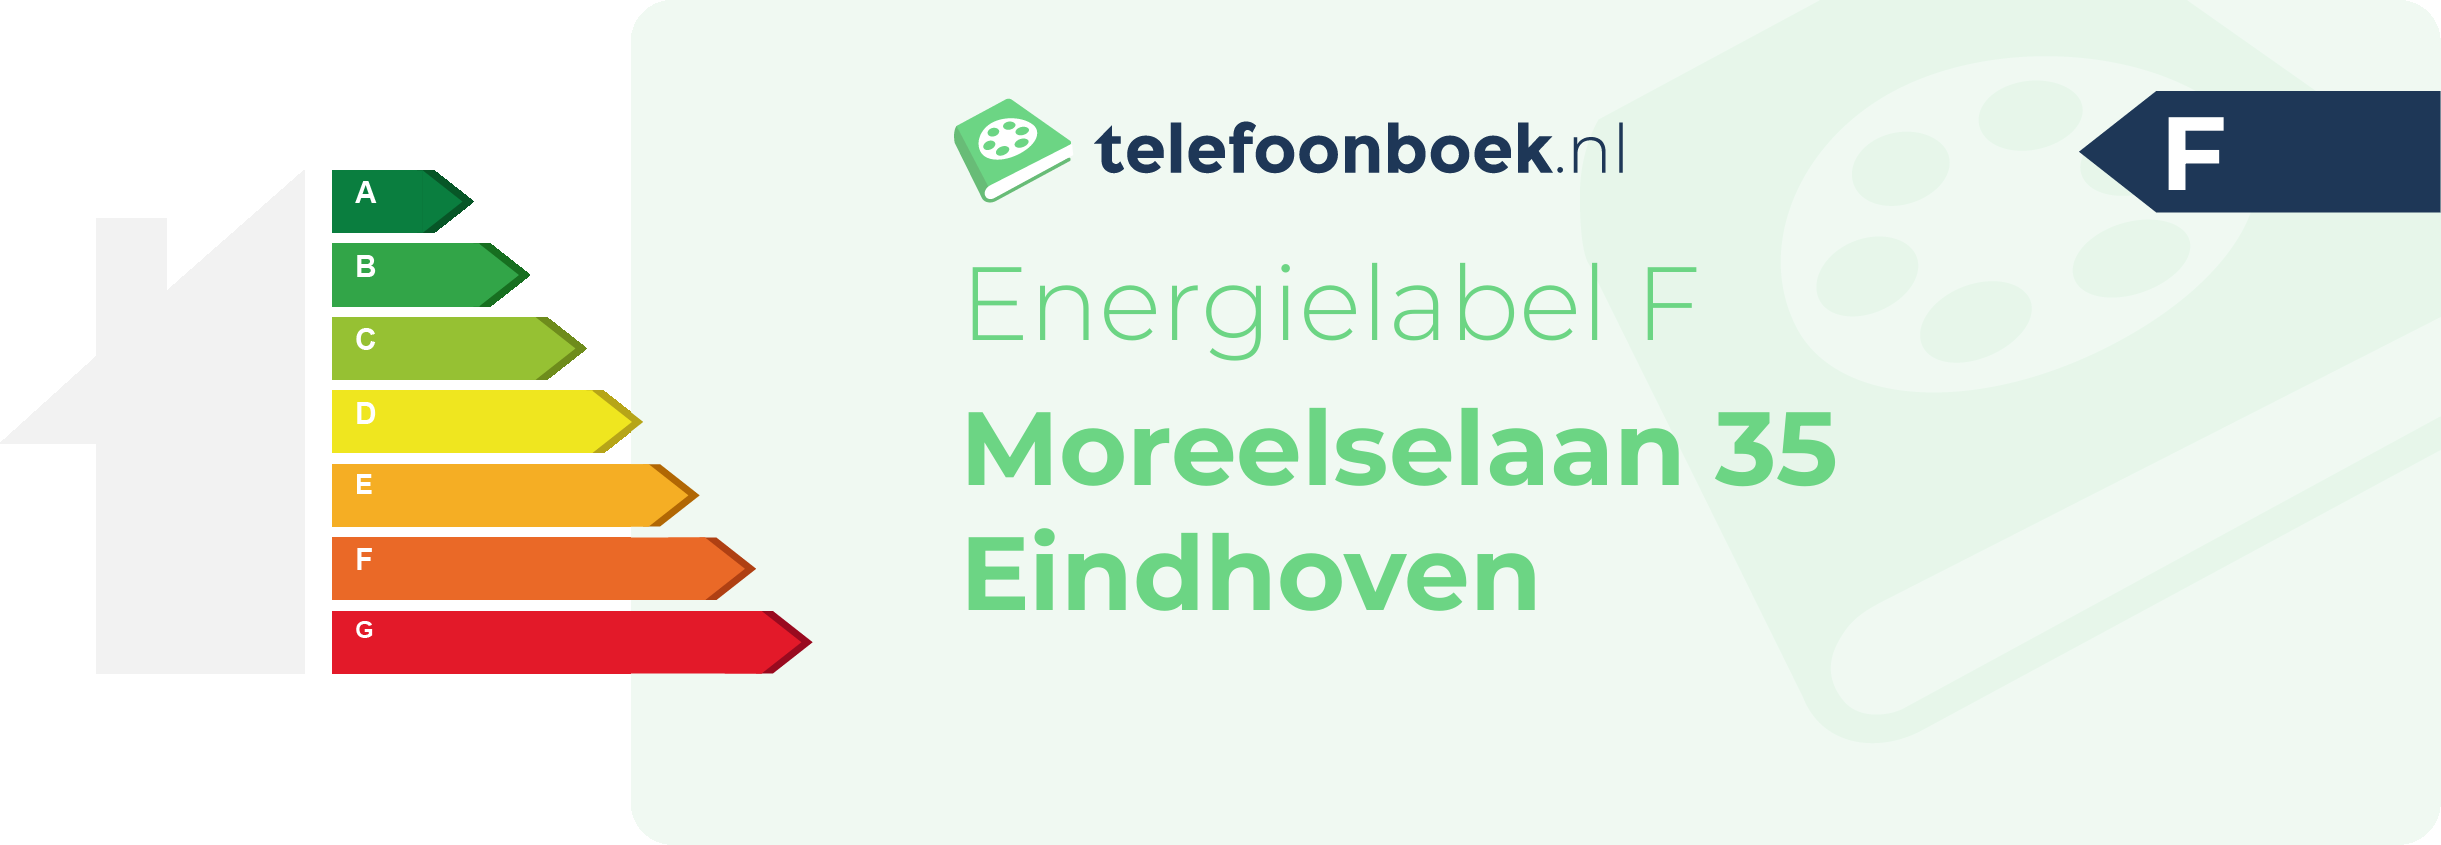 Energielabel Moreelselaan 35 Eindhoven